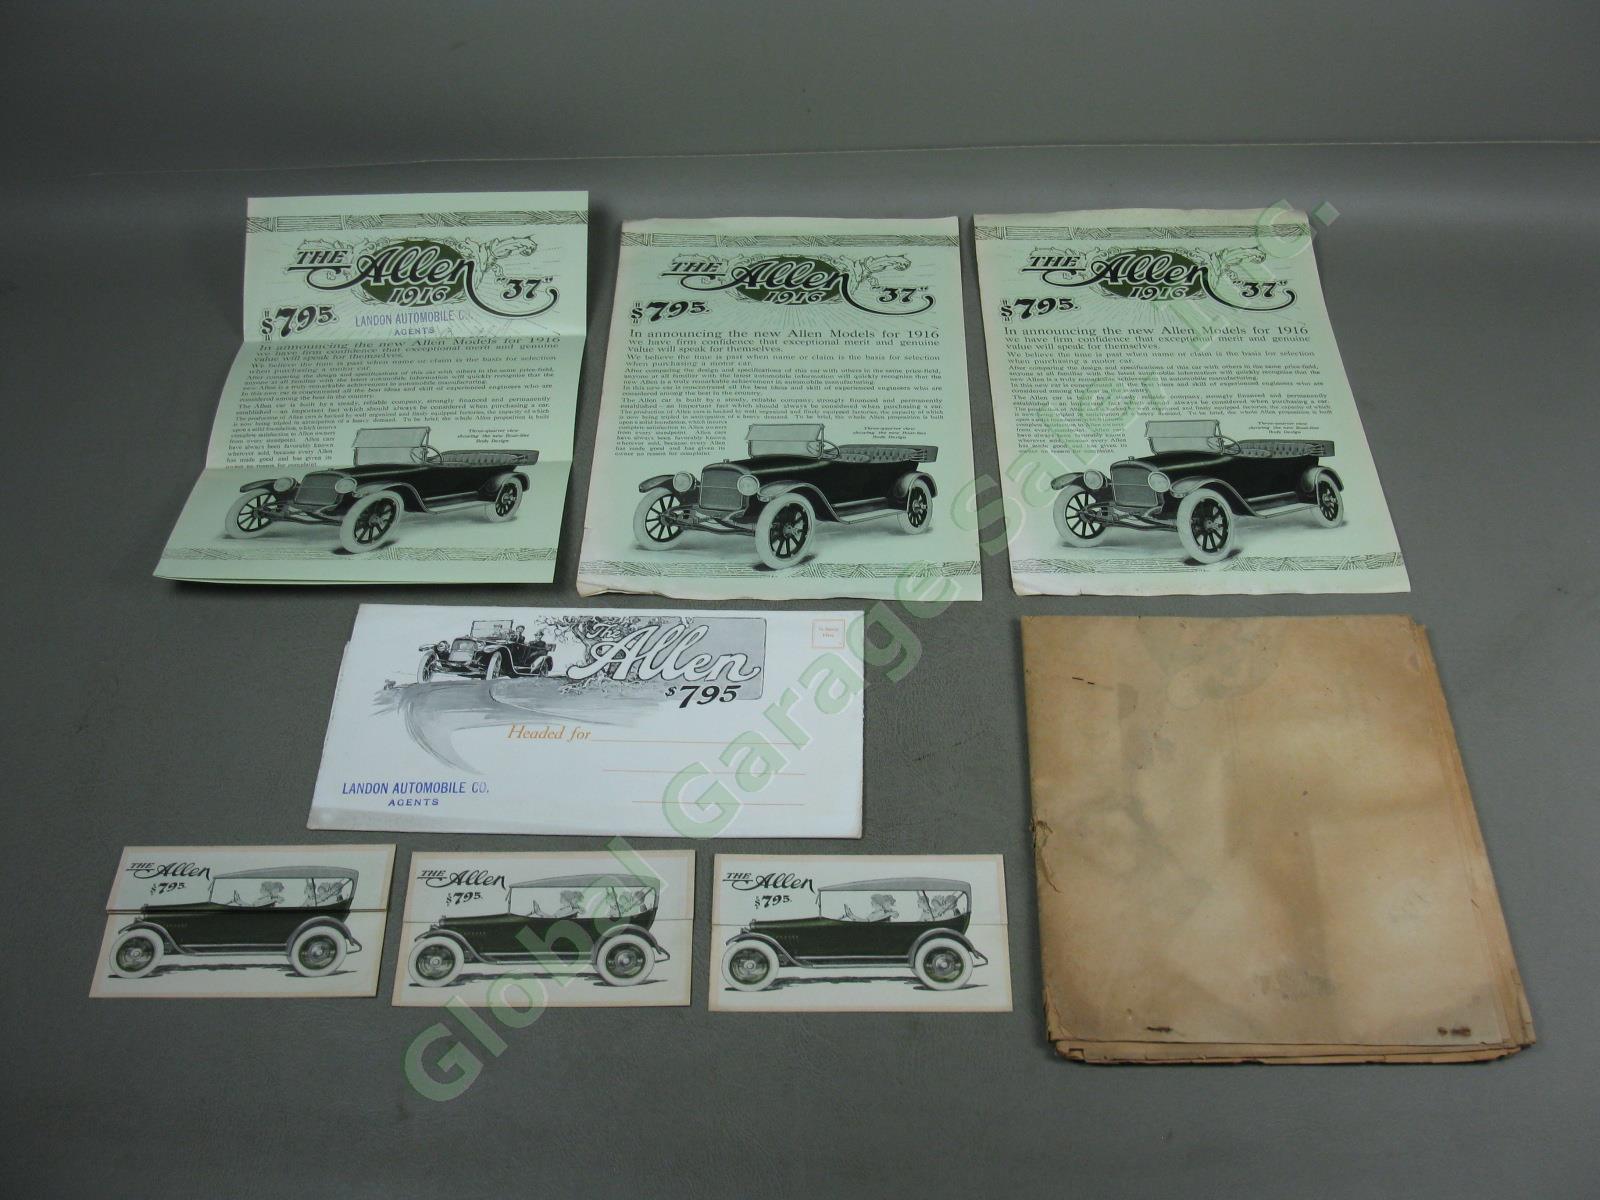 8pc Vtg Antique 1900s The Allen Motor Co Car Advertisement Ephemera Lot Posters+